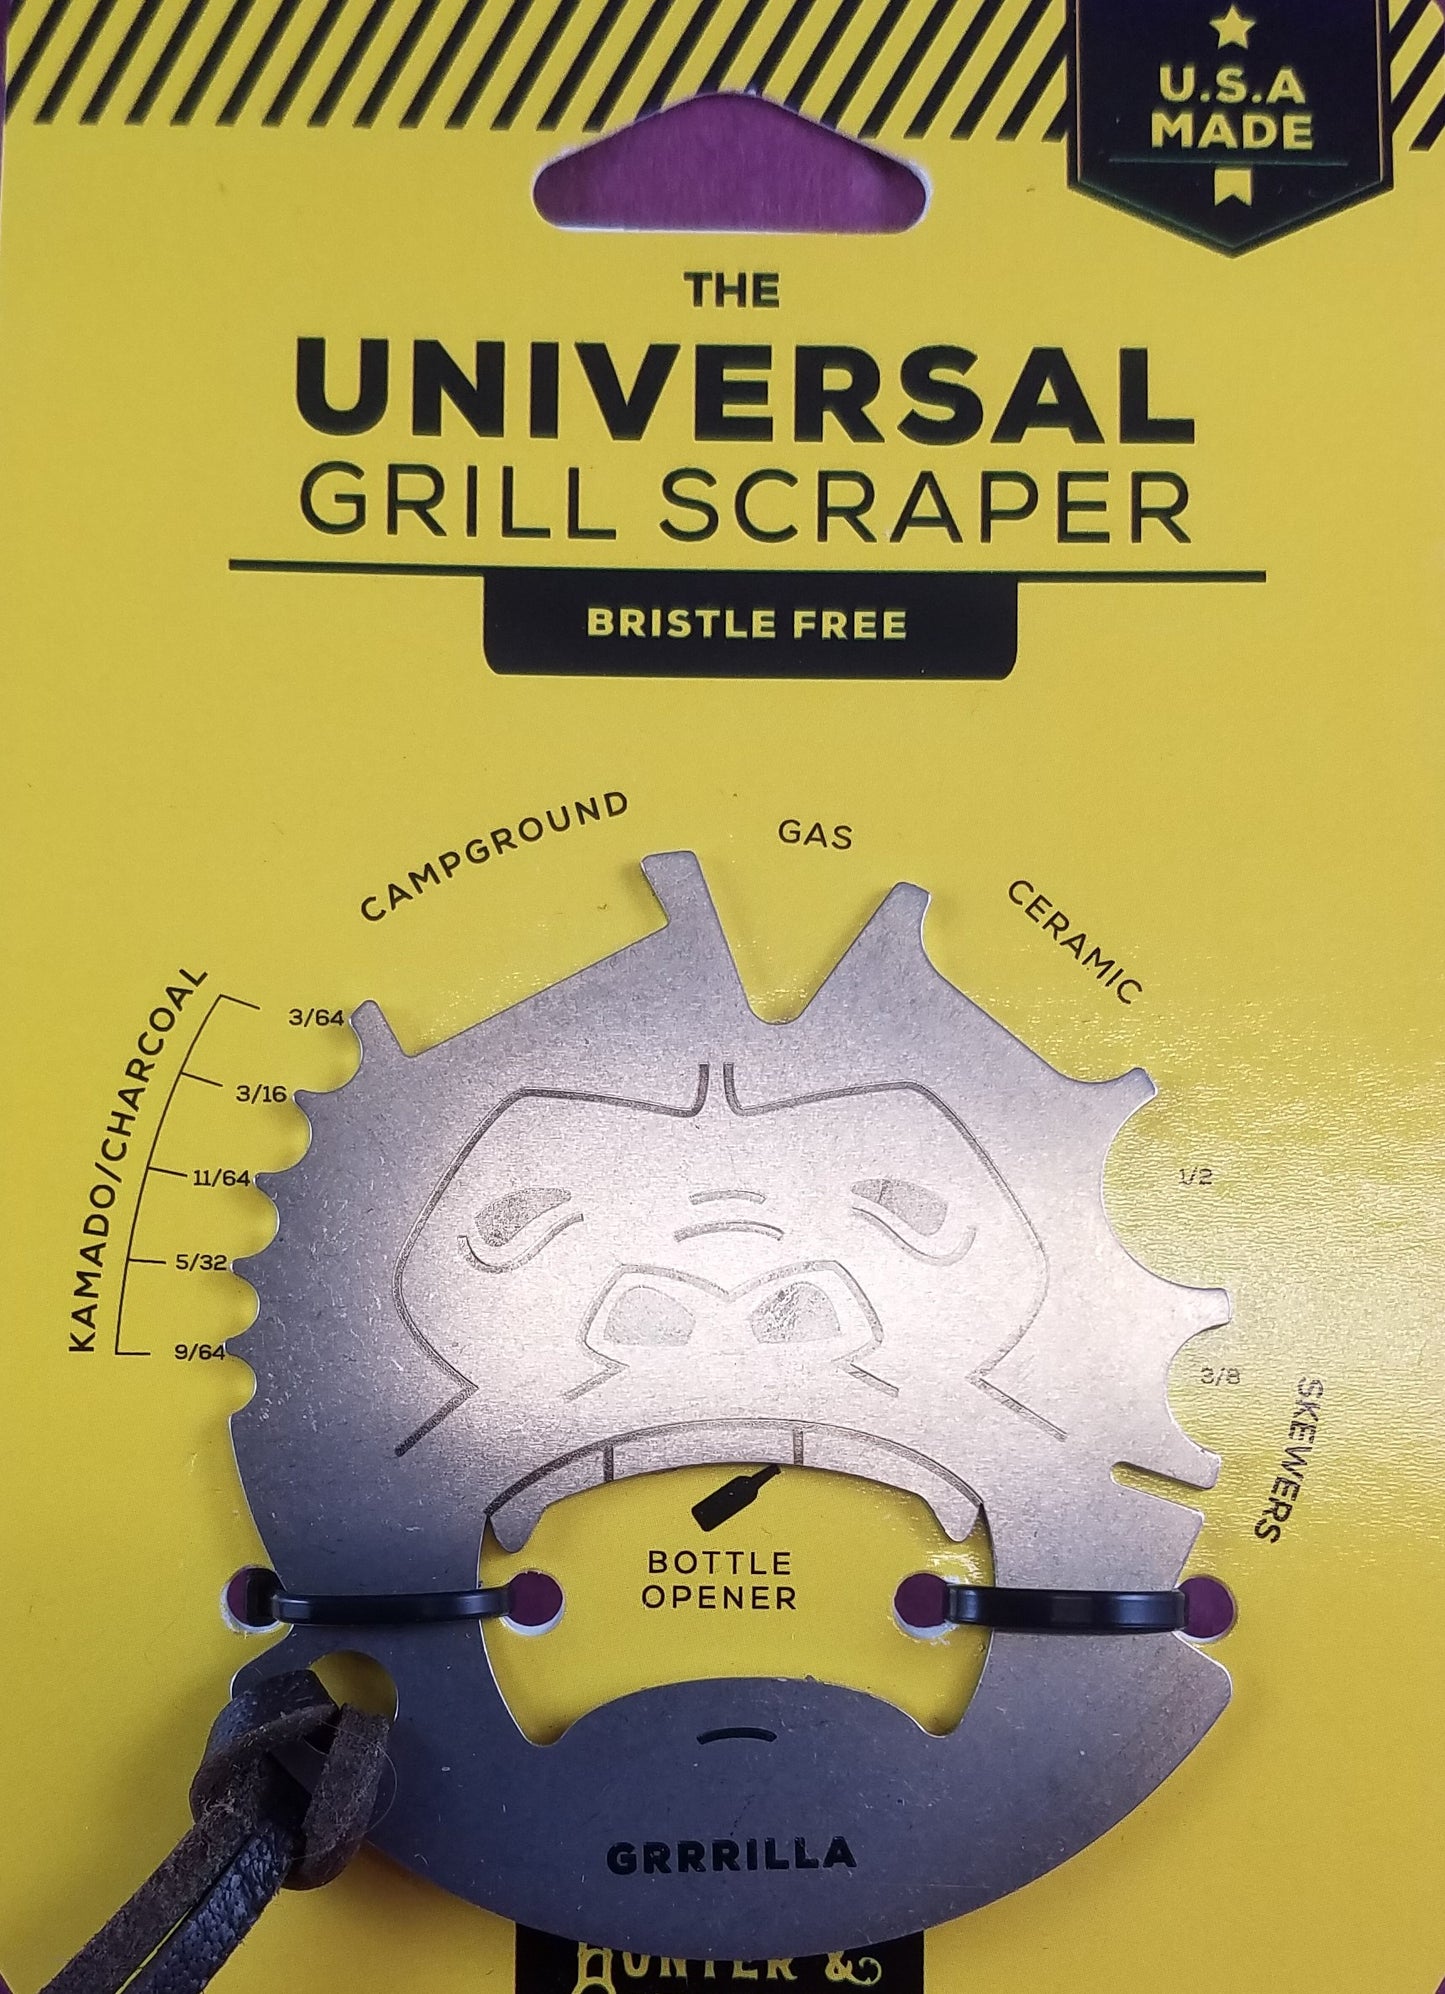 Gorilla Grill Scraper